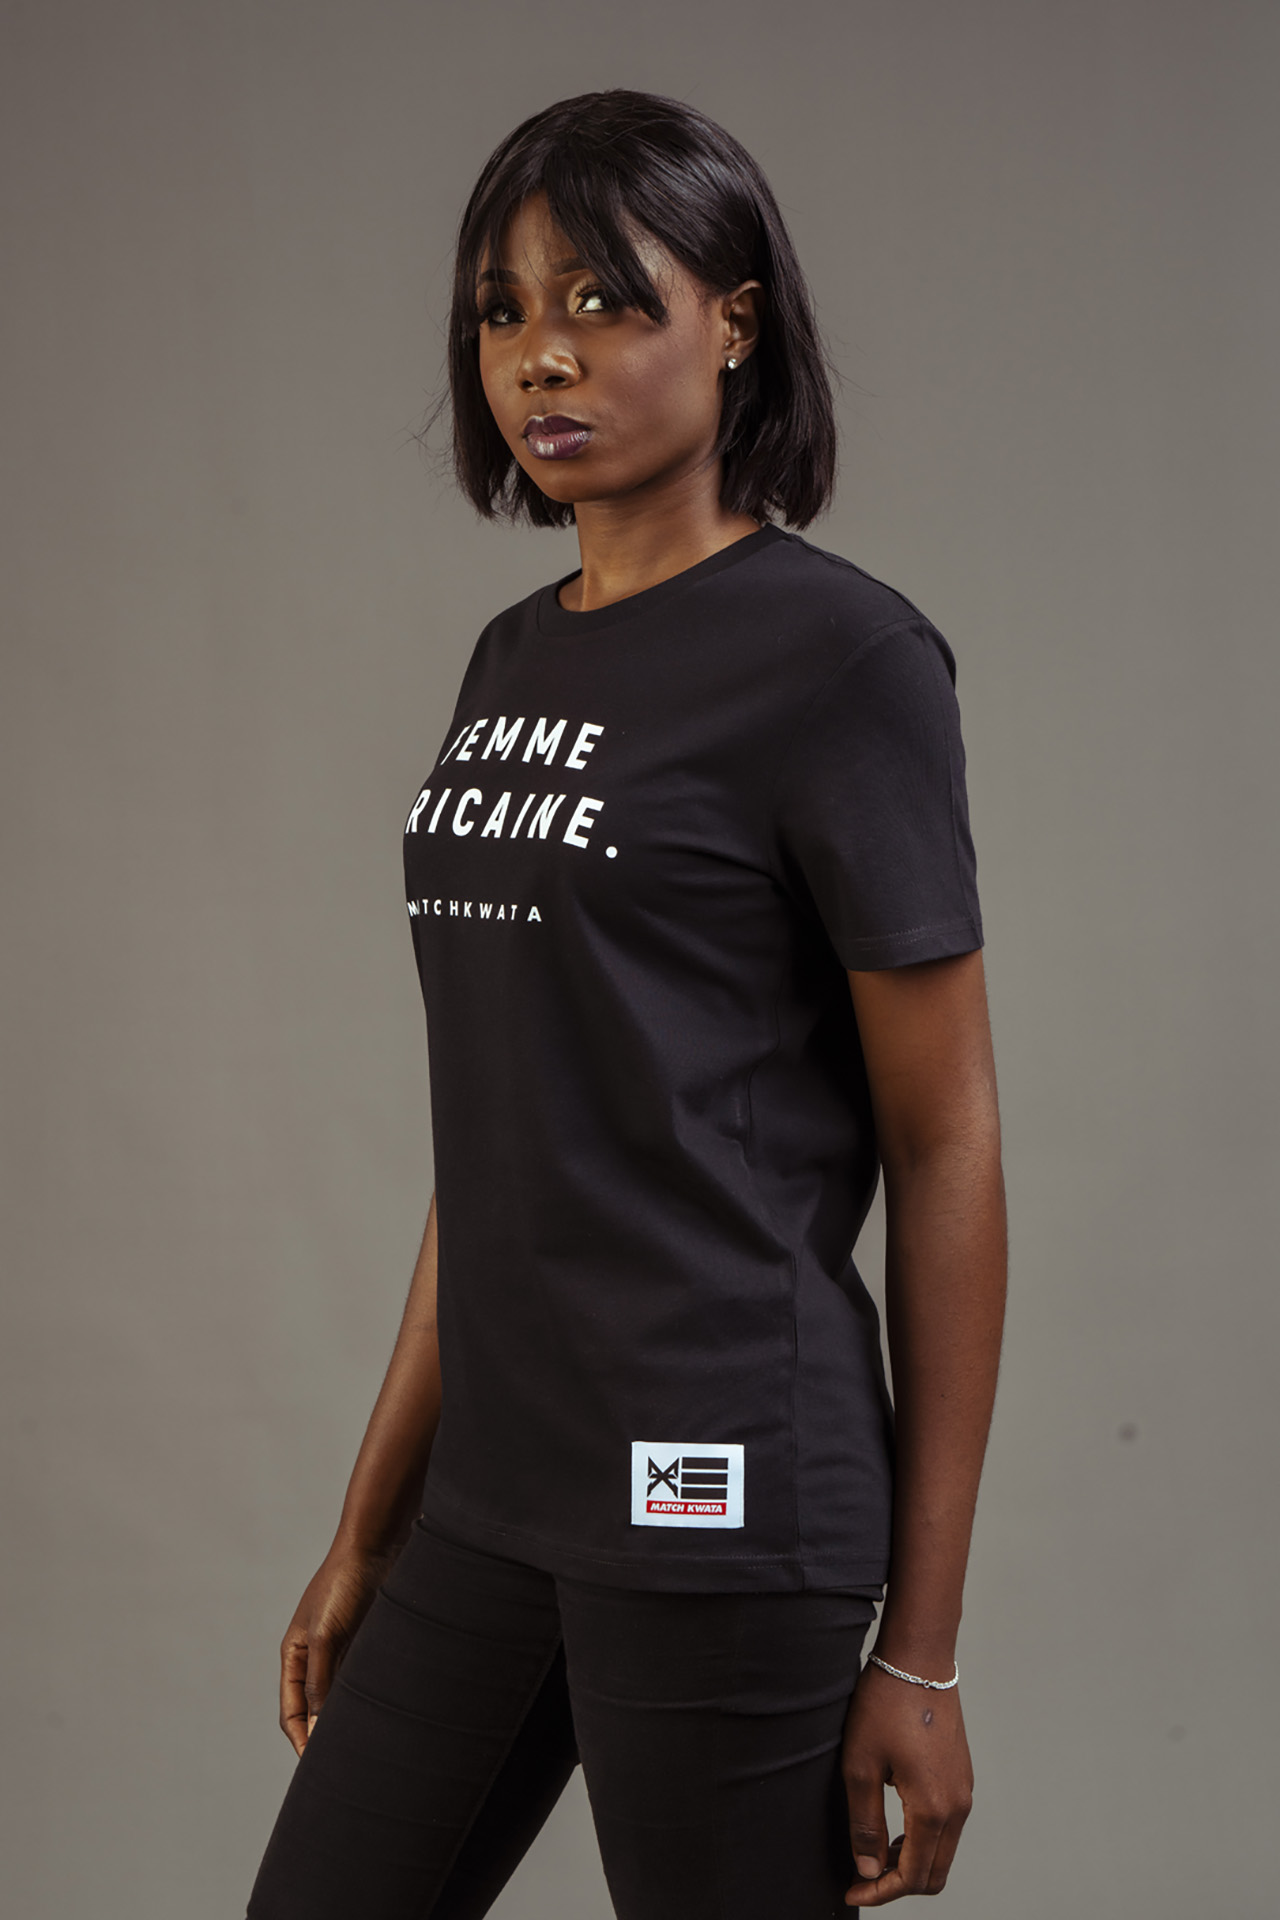 T-Shirt-MatchKwata-Femme-Africaine-Noir-2